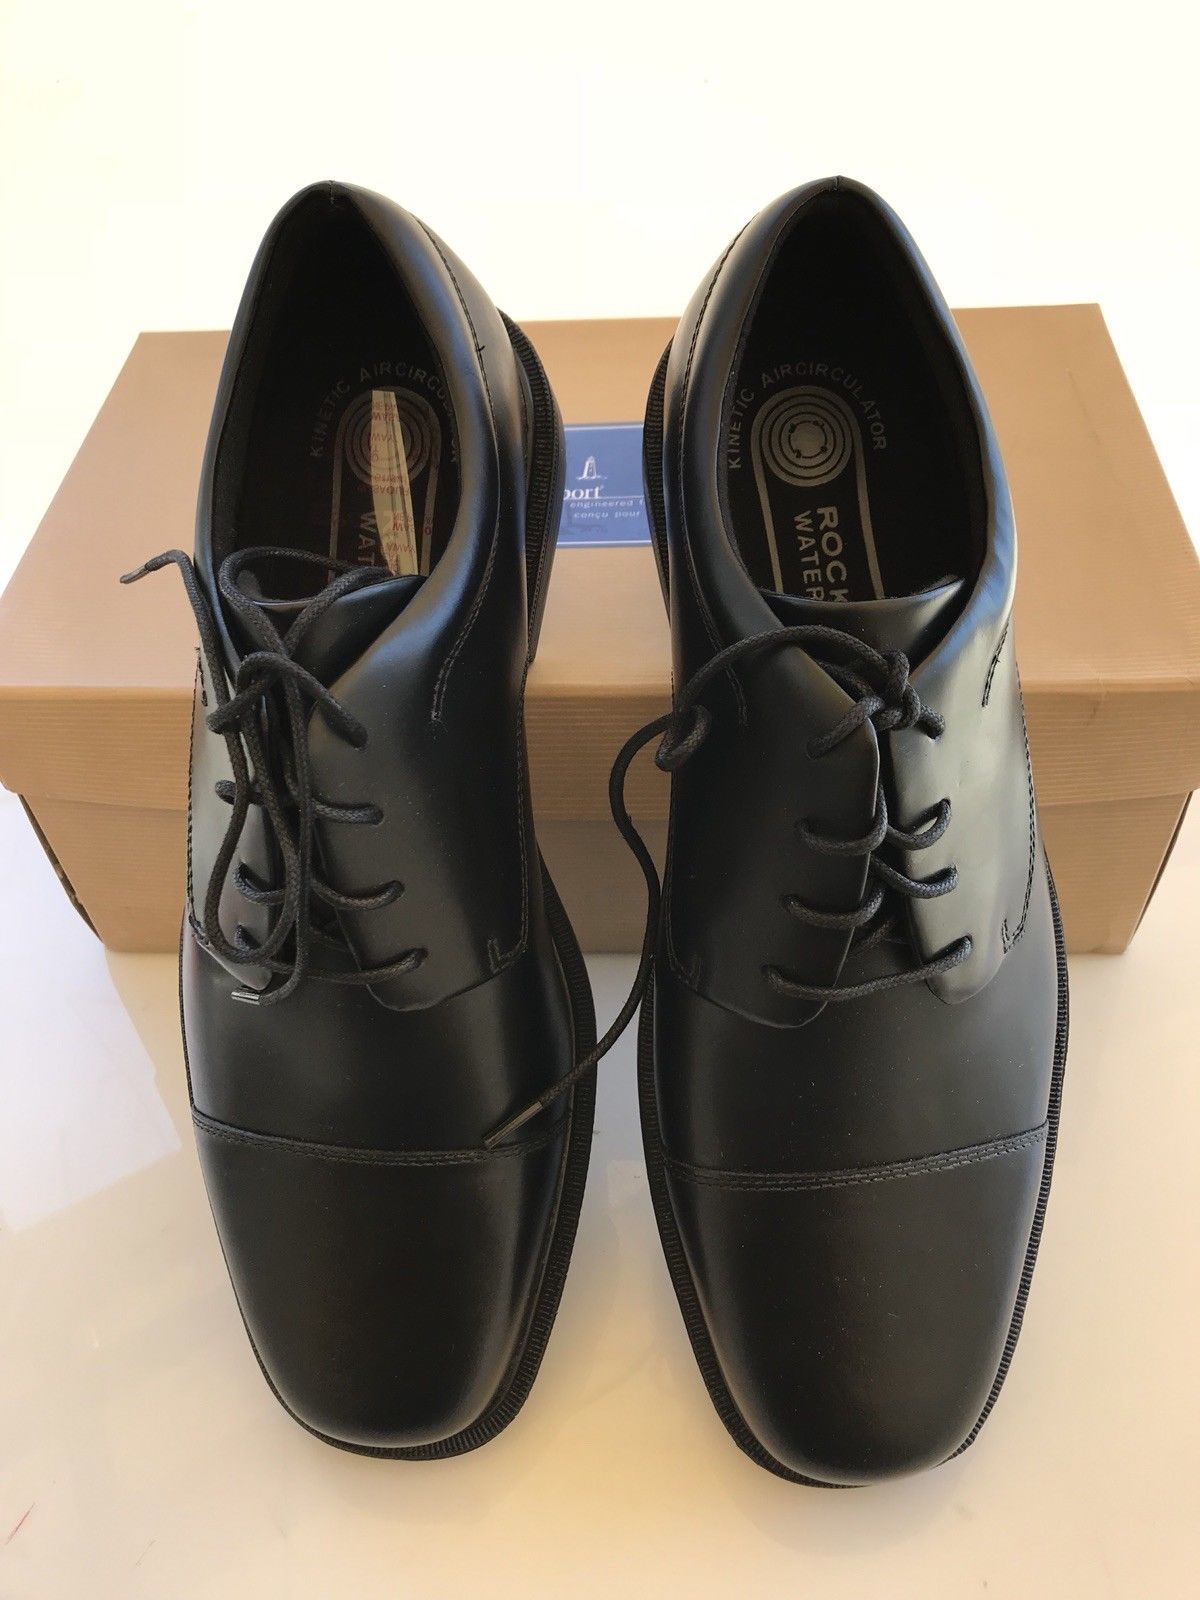 Rockport Ellingwood Oxford Shoe Black Size 8.5 APM11771 - $34.99